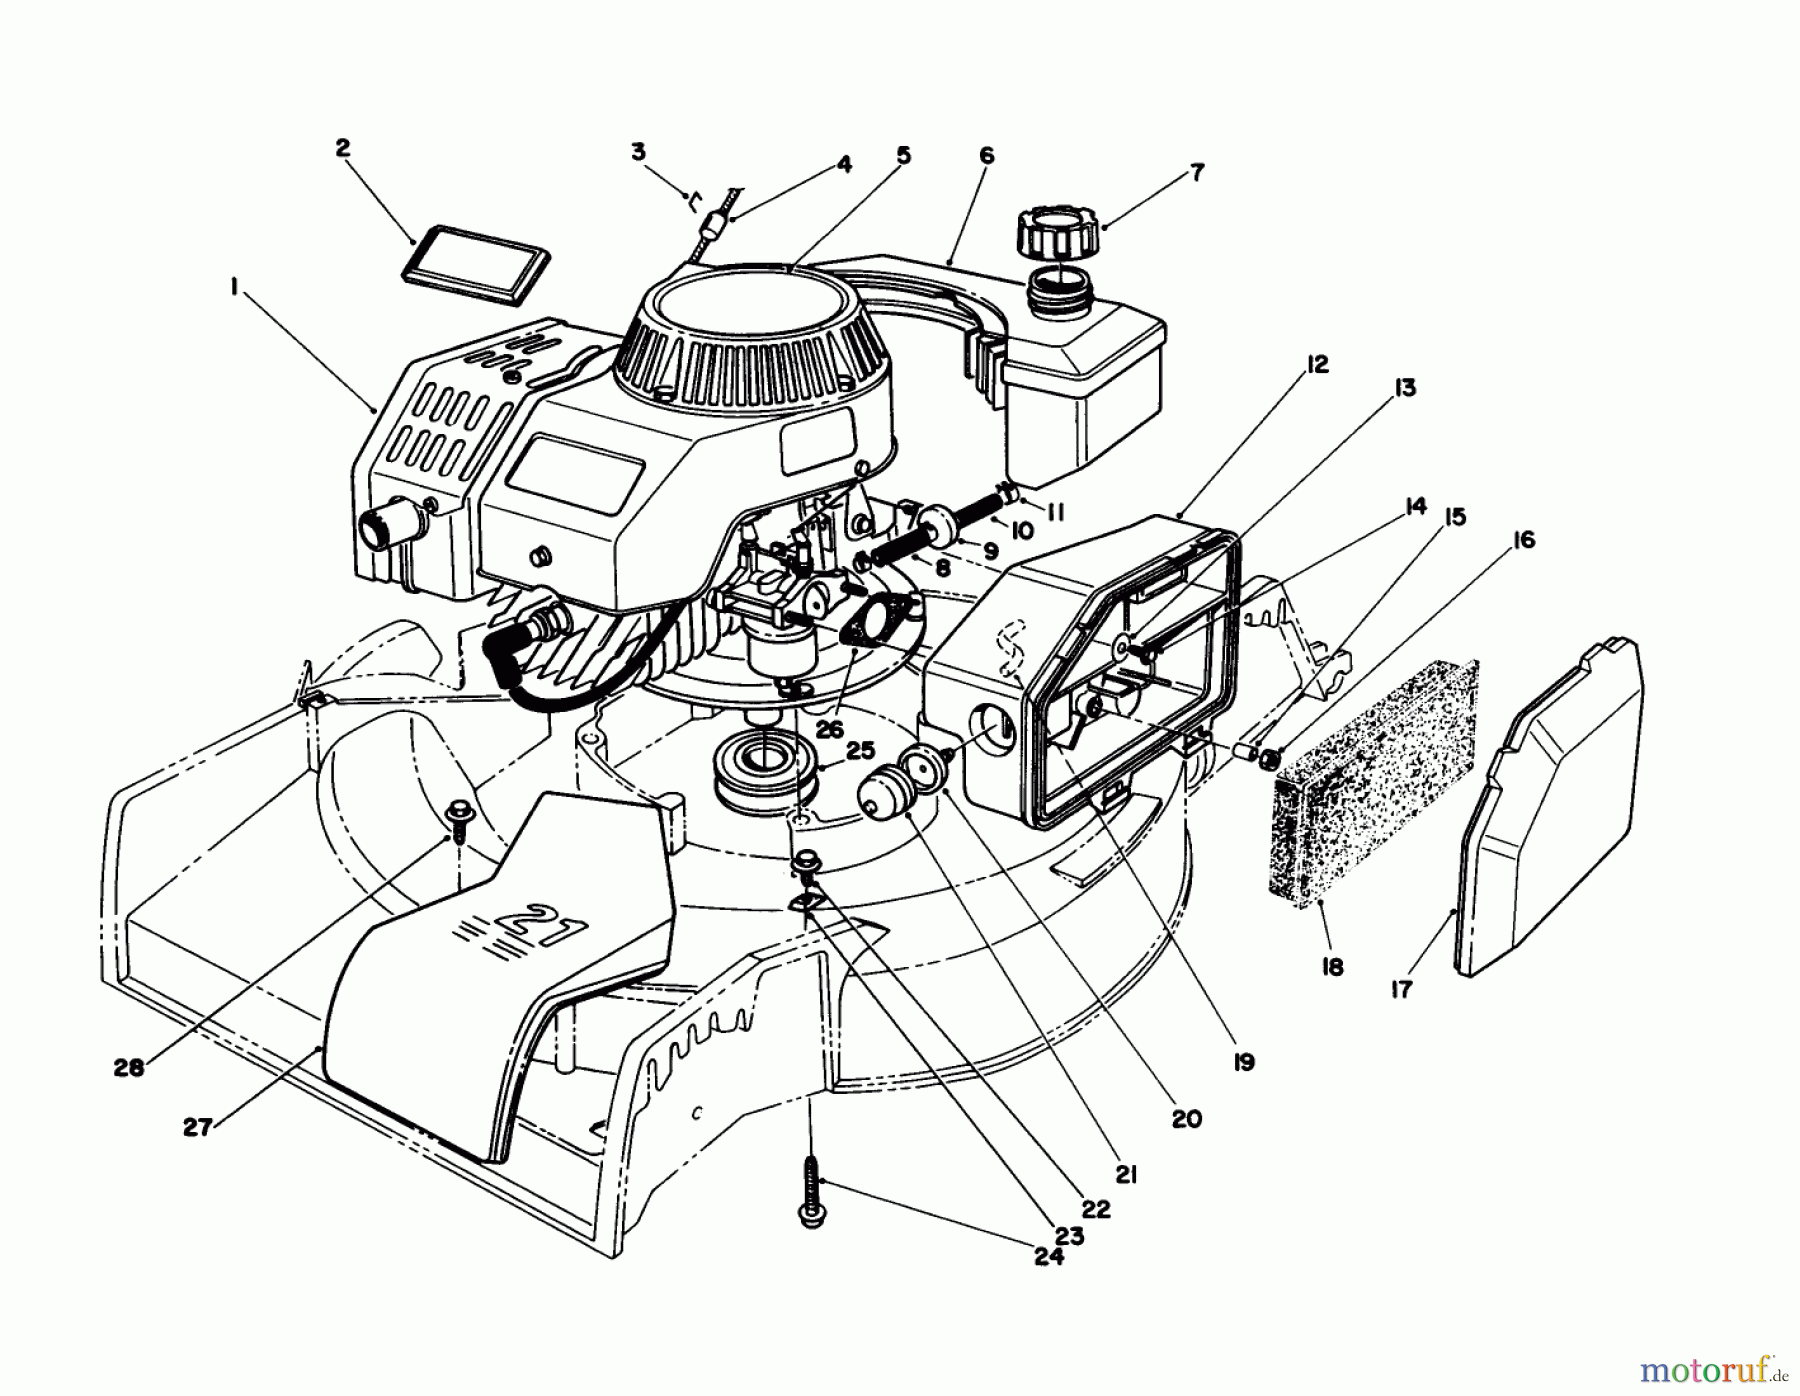  Toro Neu Mowers, Walk-Behind Seite 1 16785 - Toro Lawnmower, 1988 (8007012-8999999) ENGINE ASSEMBLY